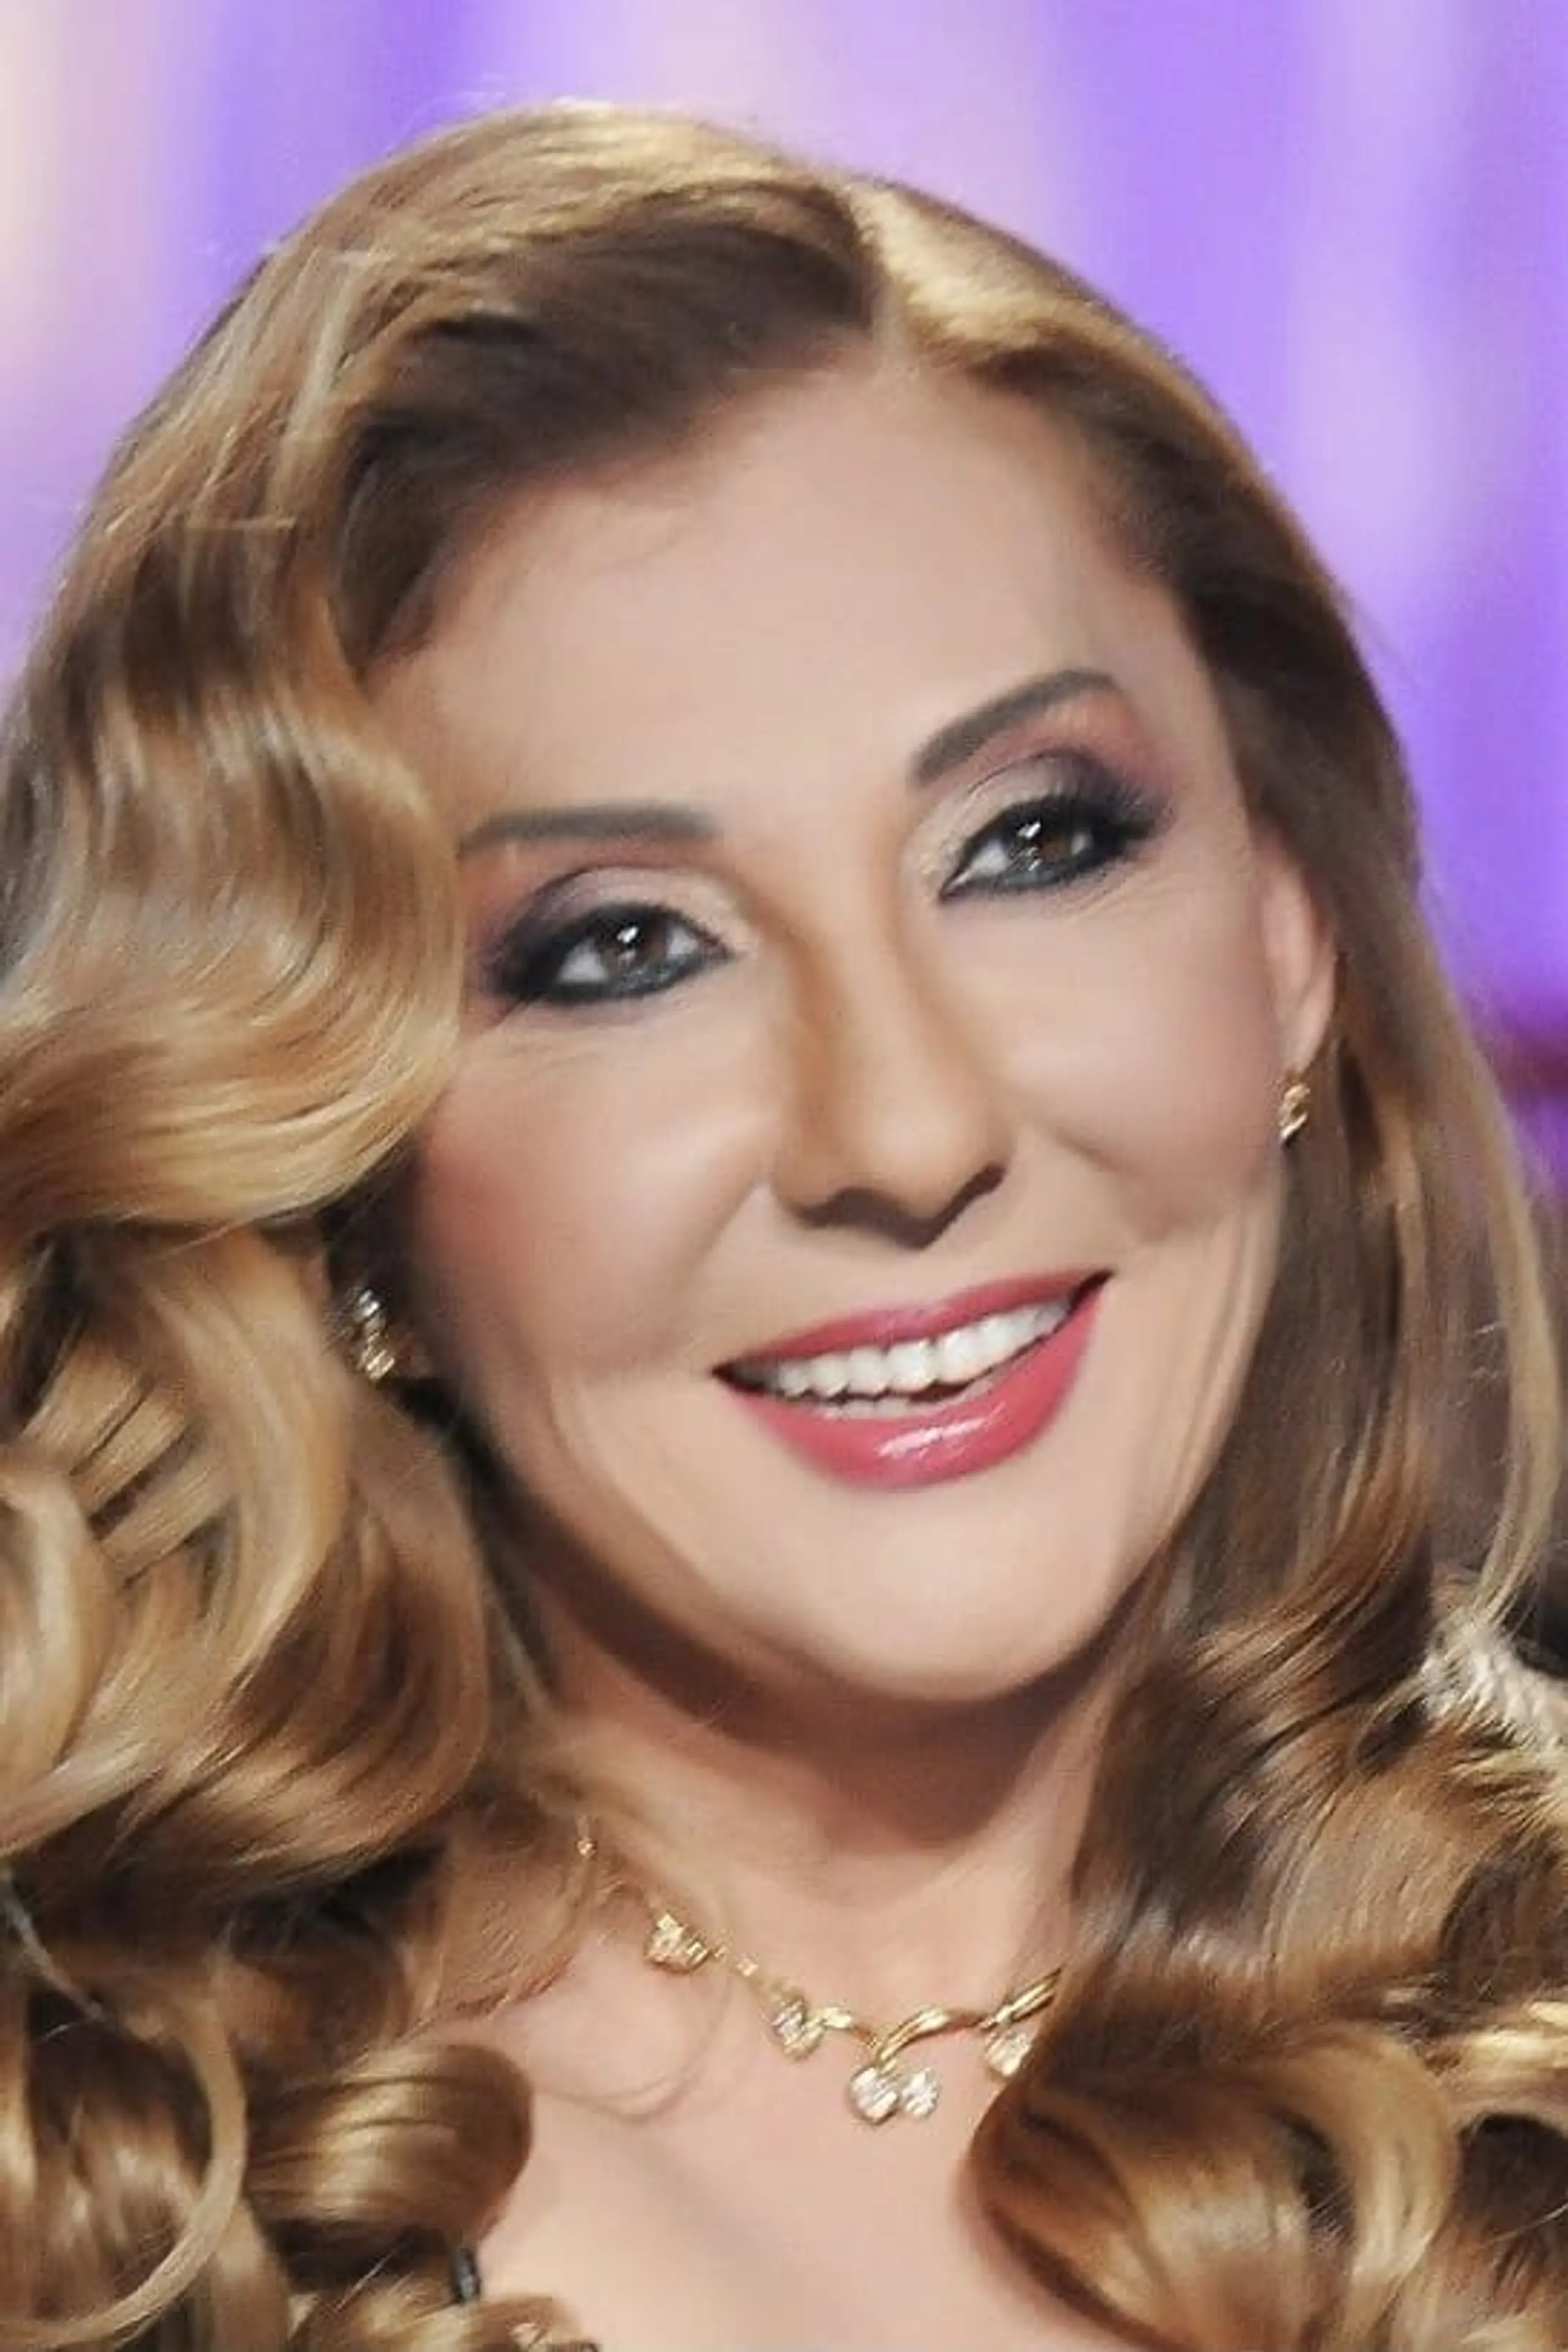 Nadia El Gendy